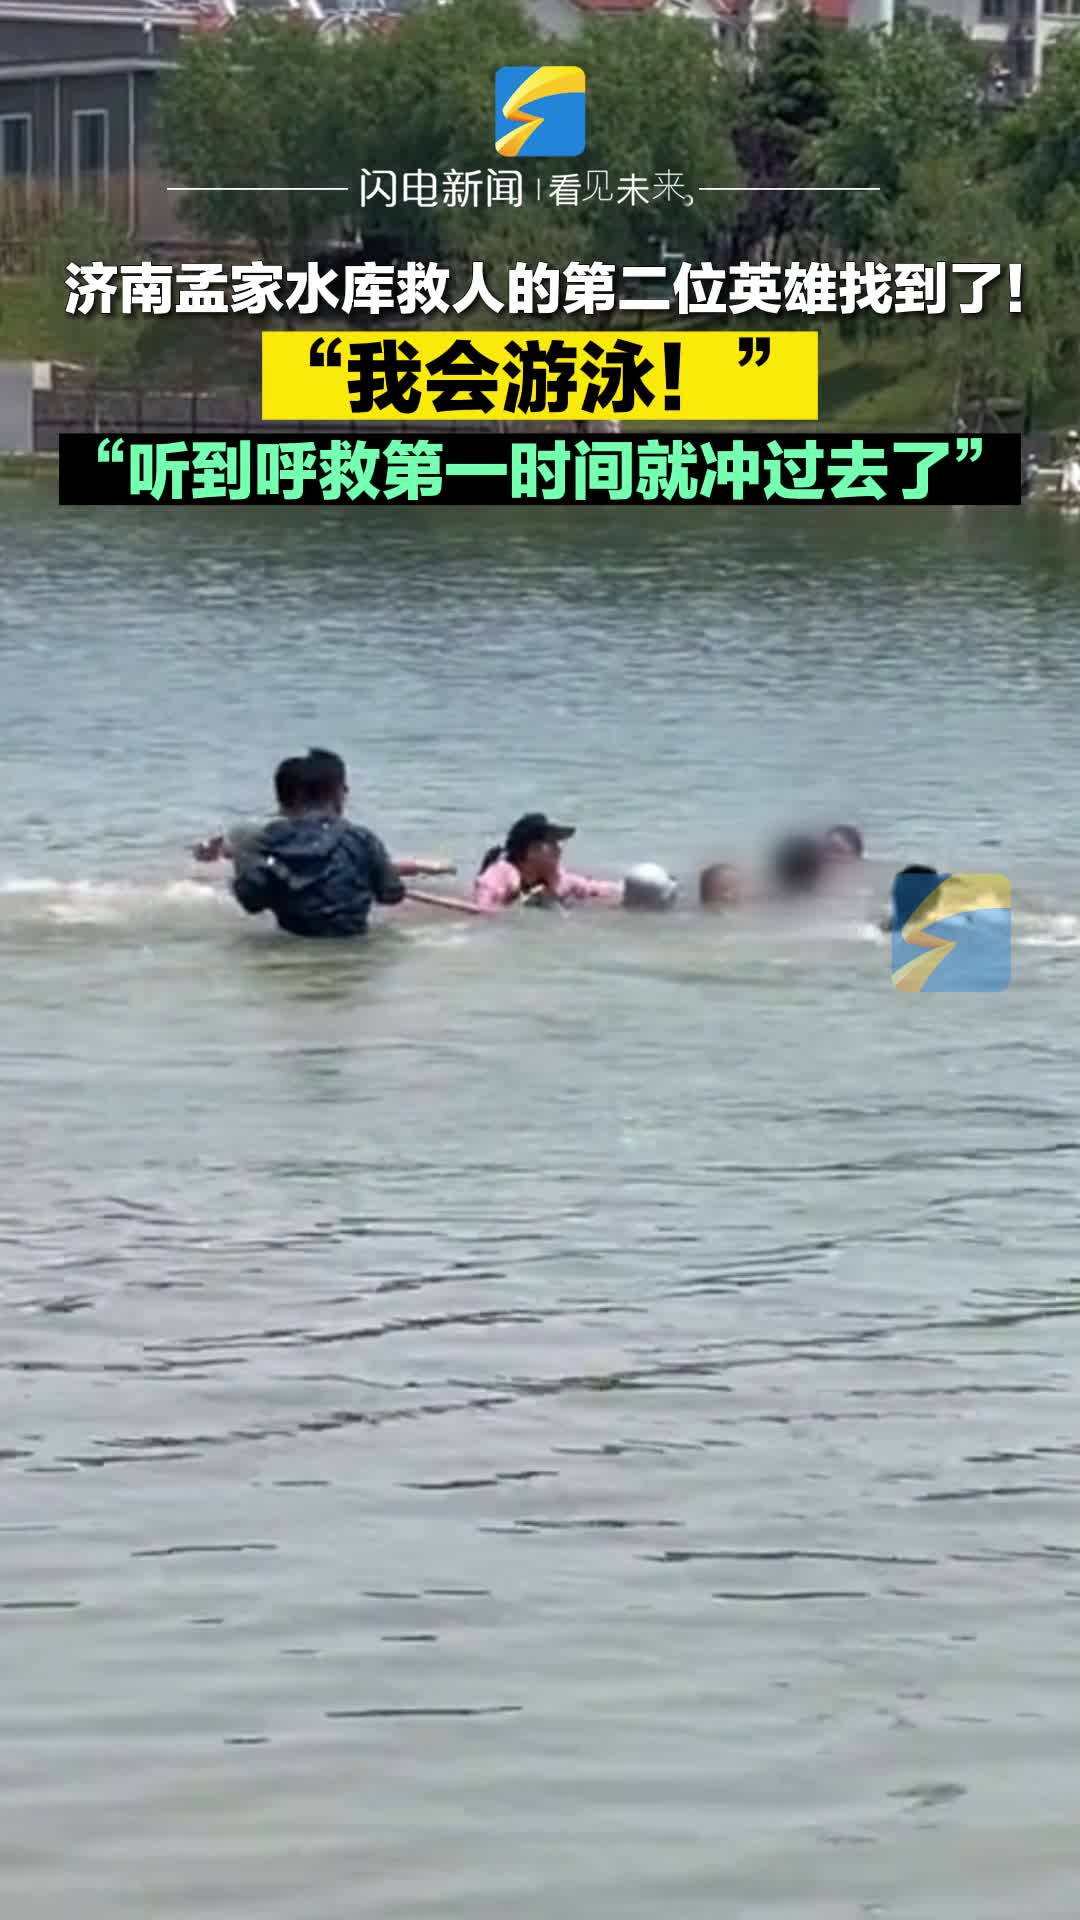 “我会游泳，第一反应就是赶紧跑去救人！”济南热心市民合力救起多名溺水者